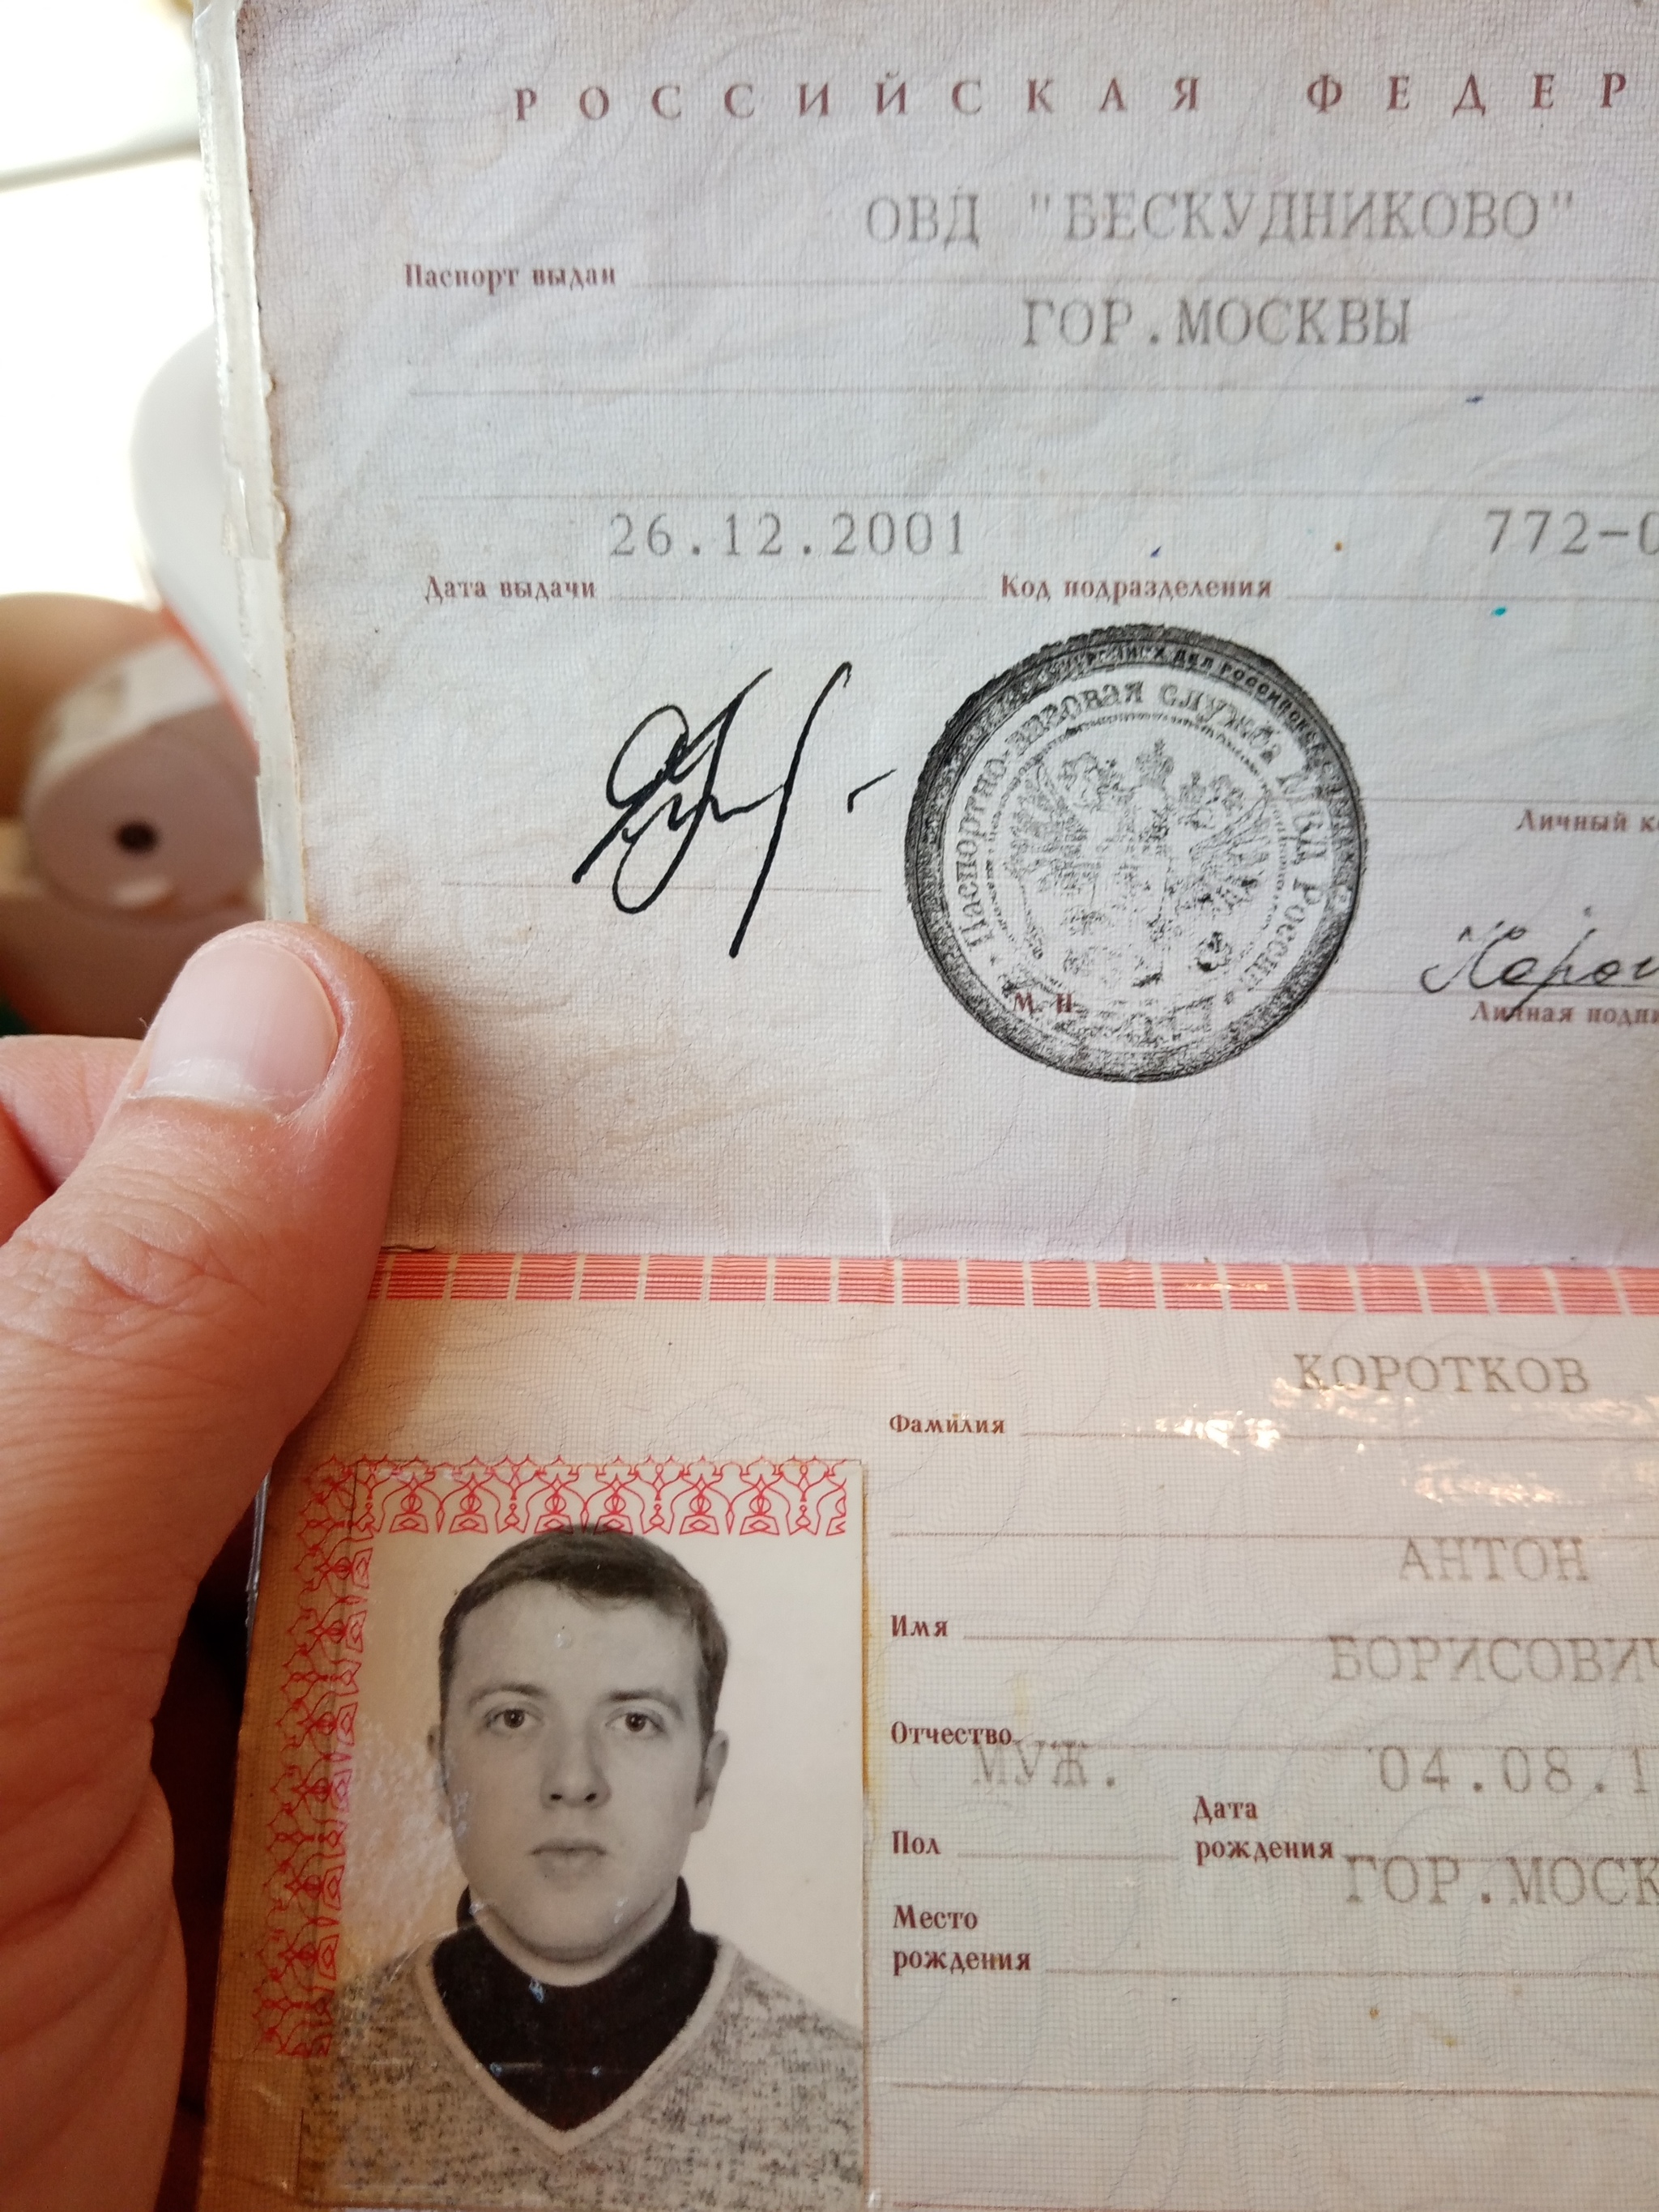 Кода Москвы паспорт